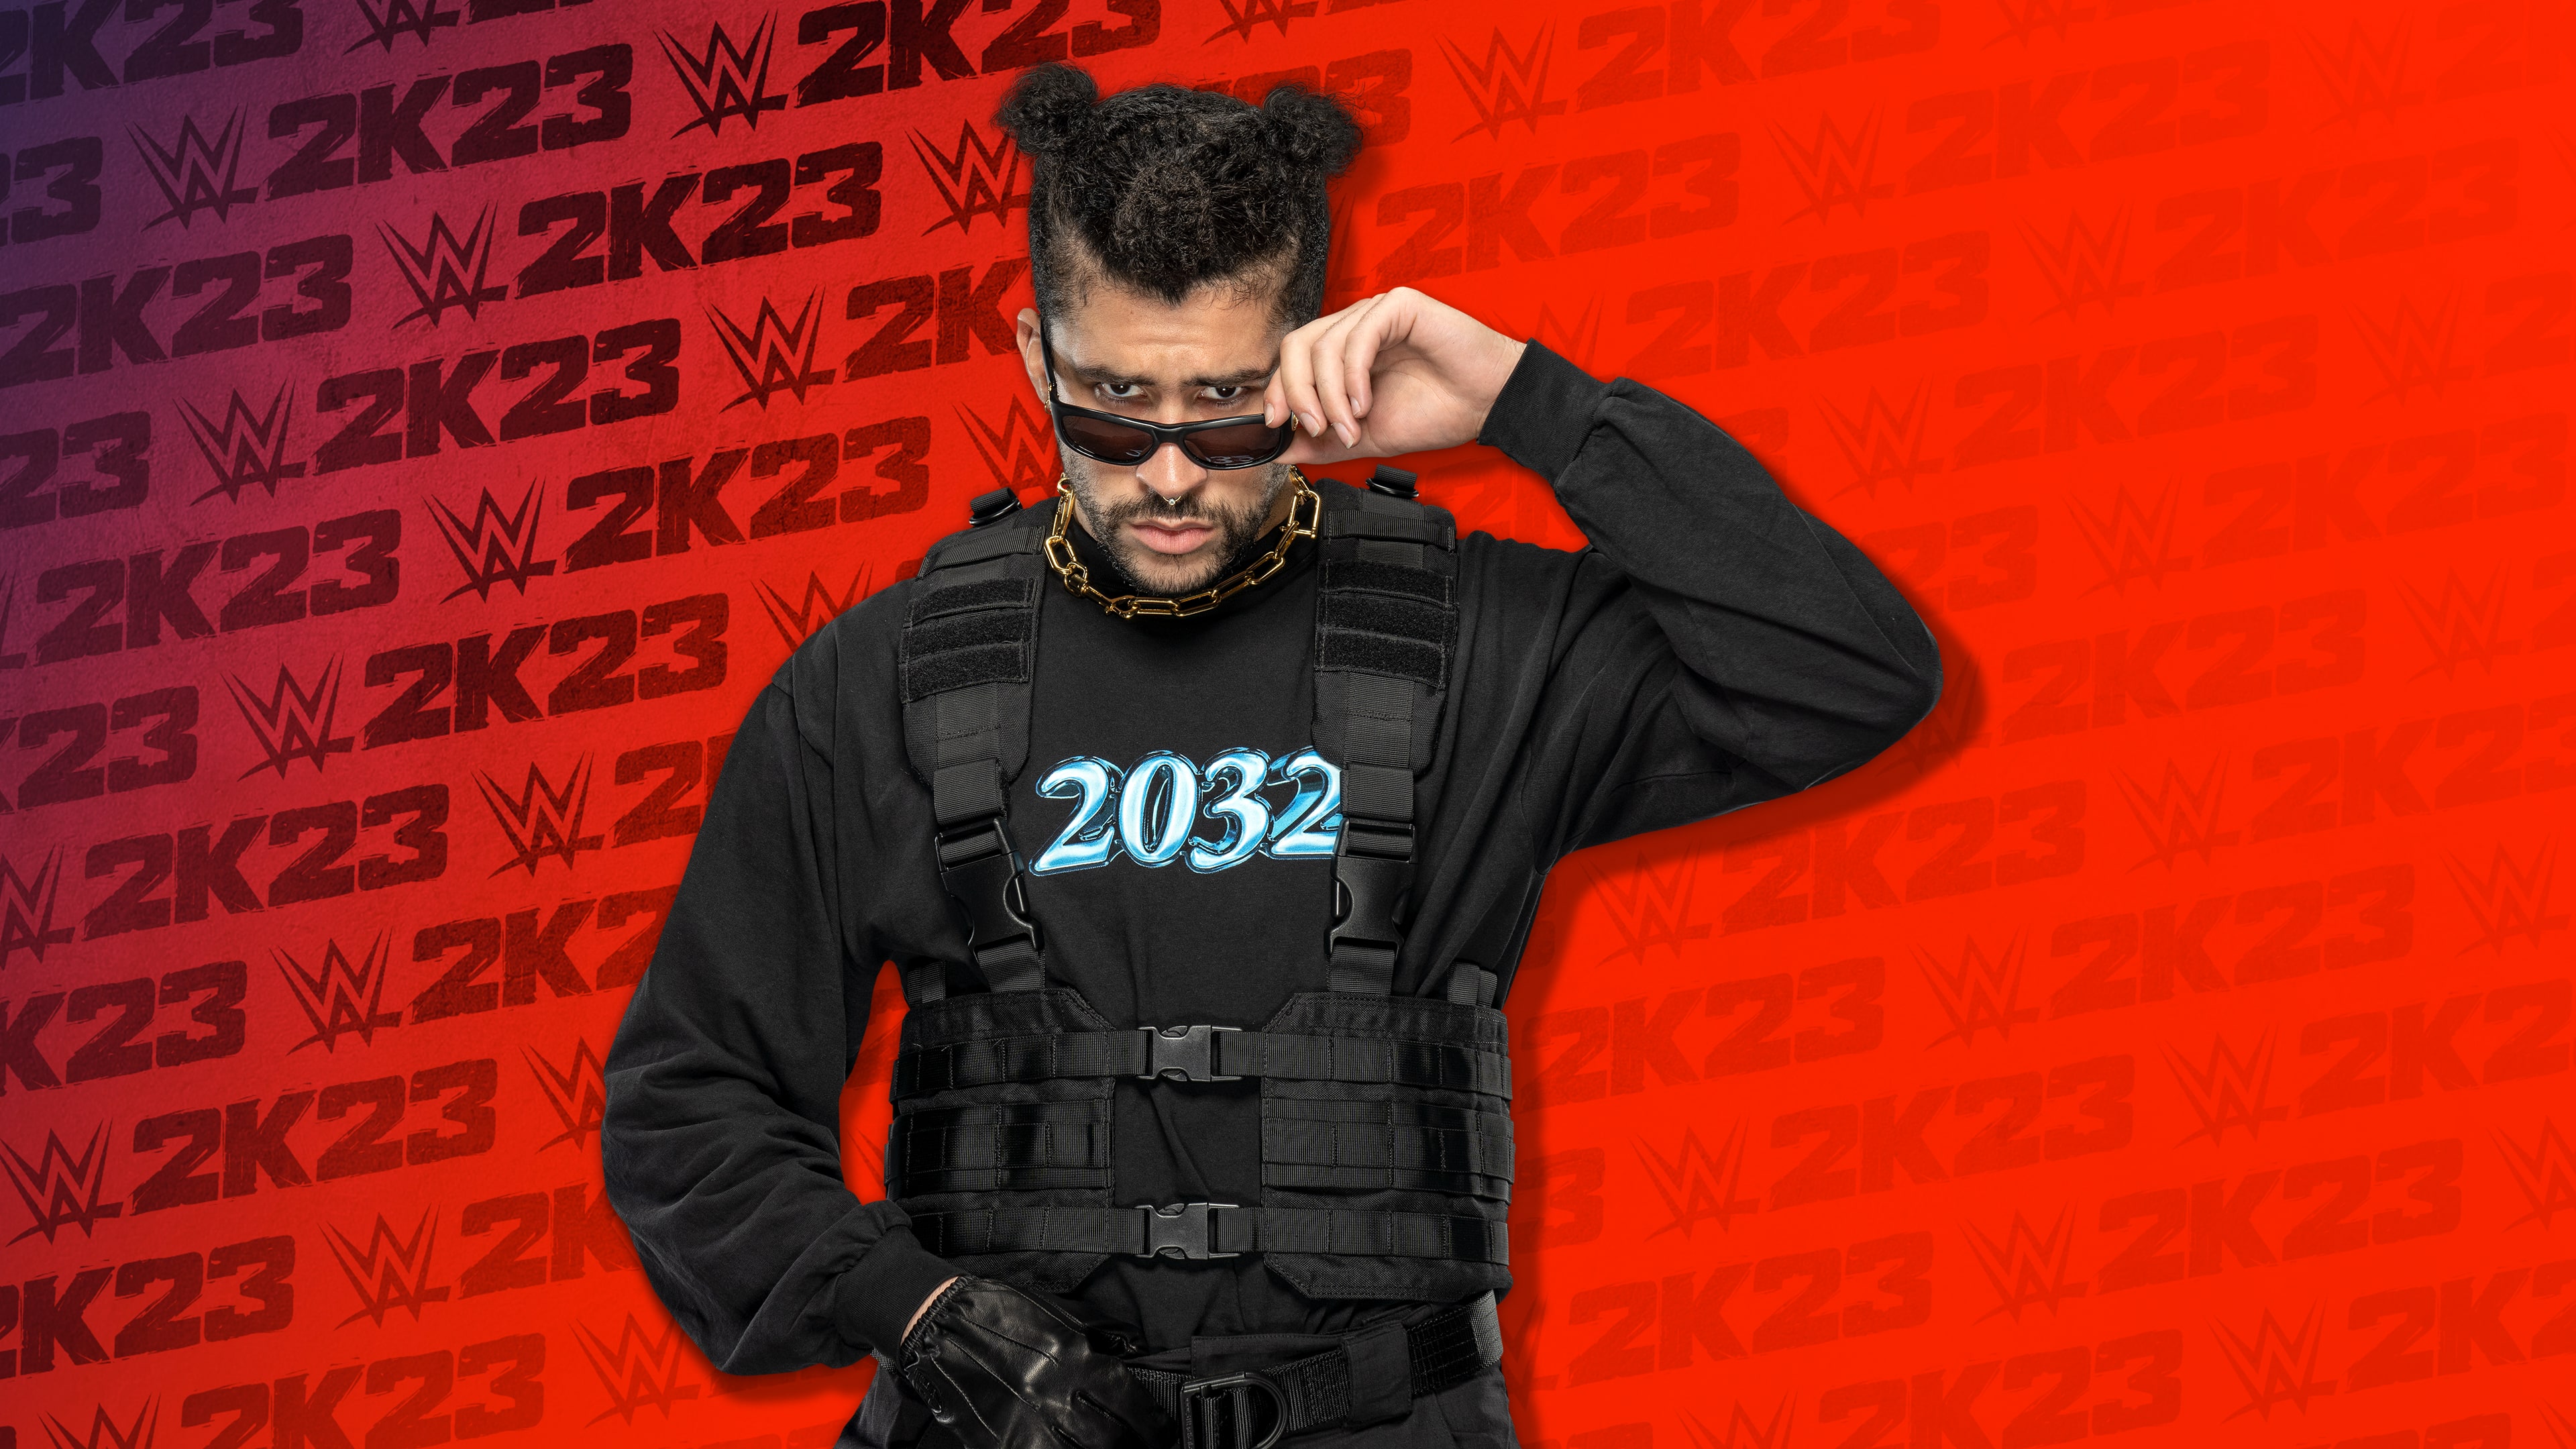 Pack de Bonus WWE 2K23 Bad Bunny